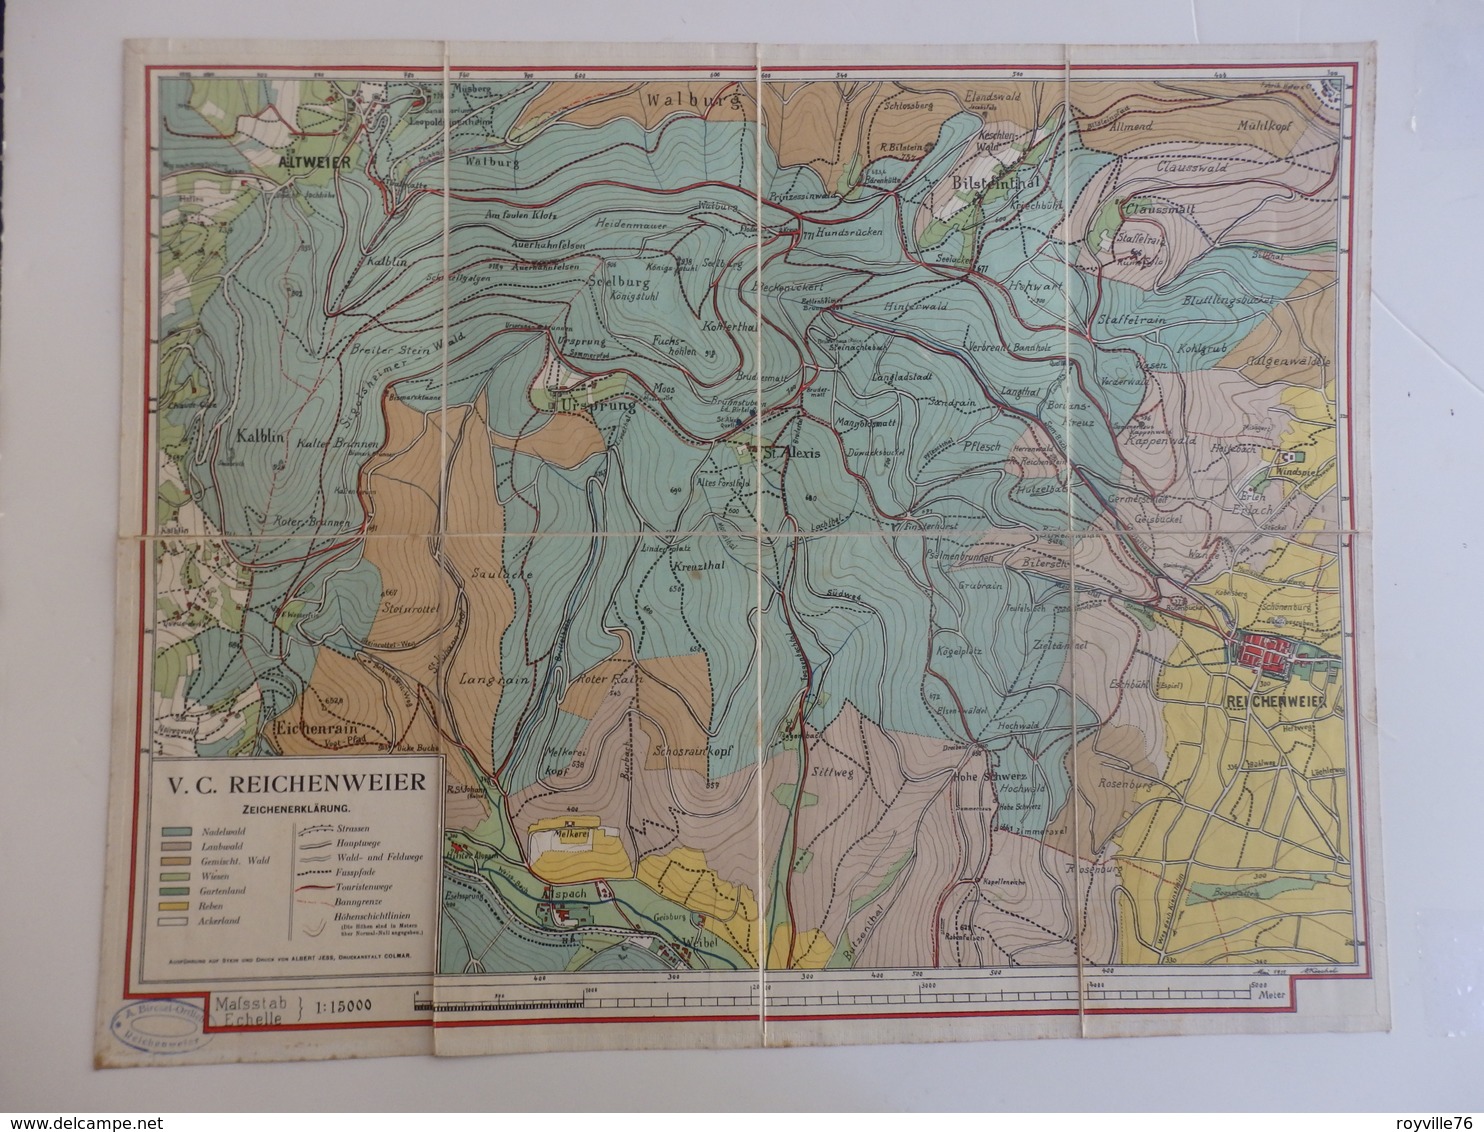 Cartes Du Haut-Rhin Allemand. A. Birckel-Ortlieb V.C. Reichenweier 1:15000. - Geographical Maps